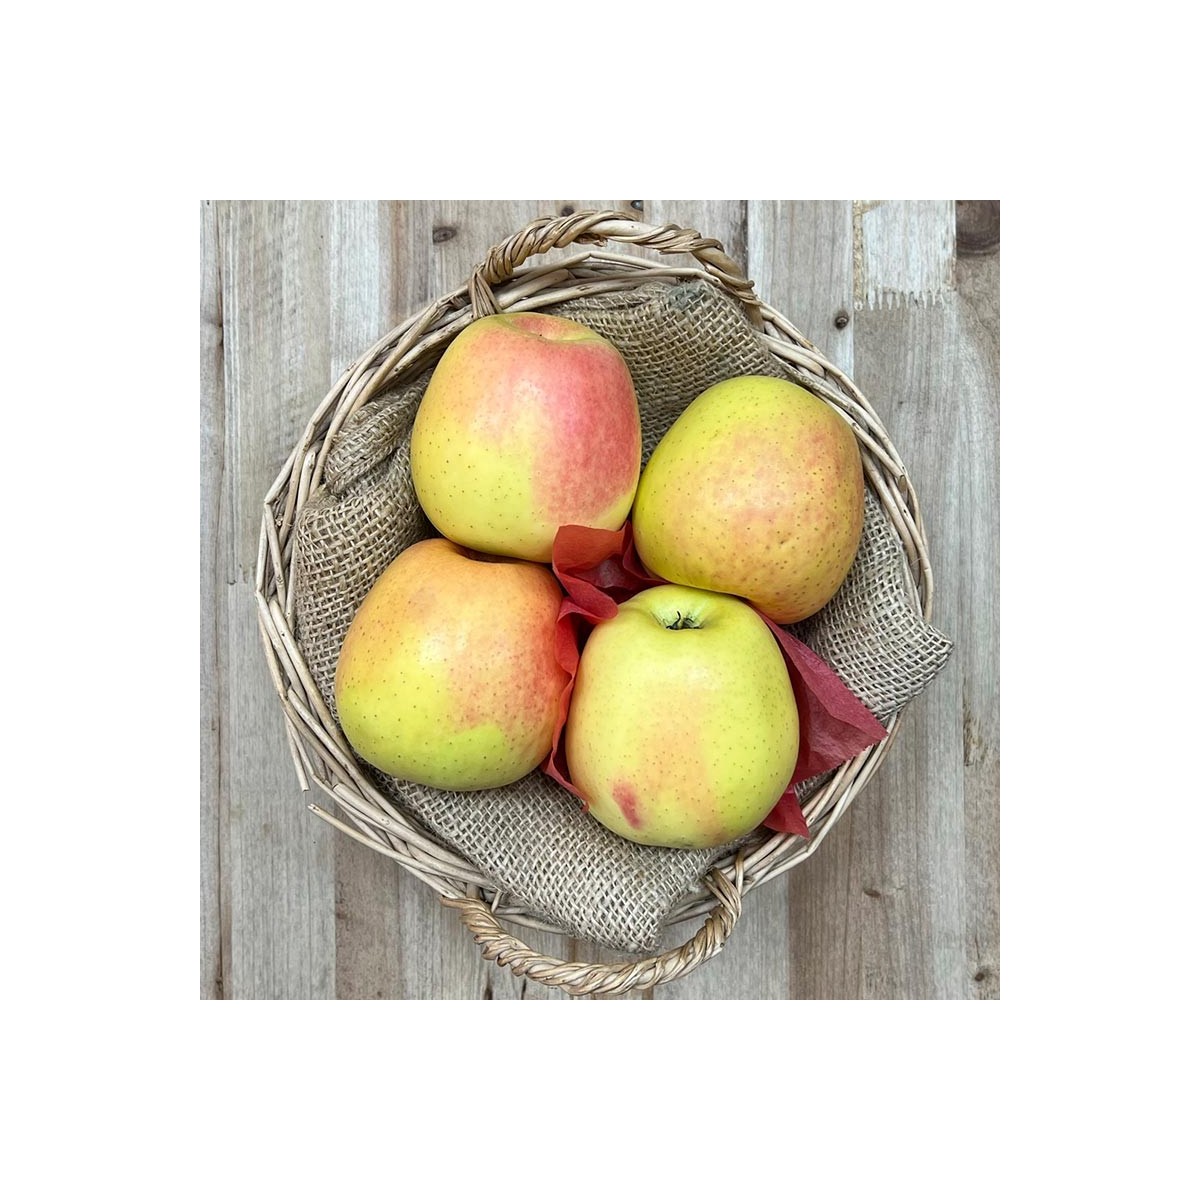 Comprar online - Manzanas Golden - - Manzanas, peras y Plátanos. -1- Lo mejor de la fruta